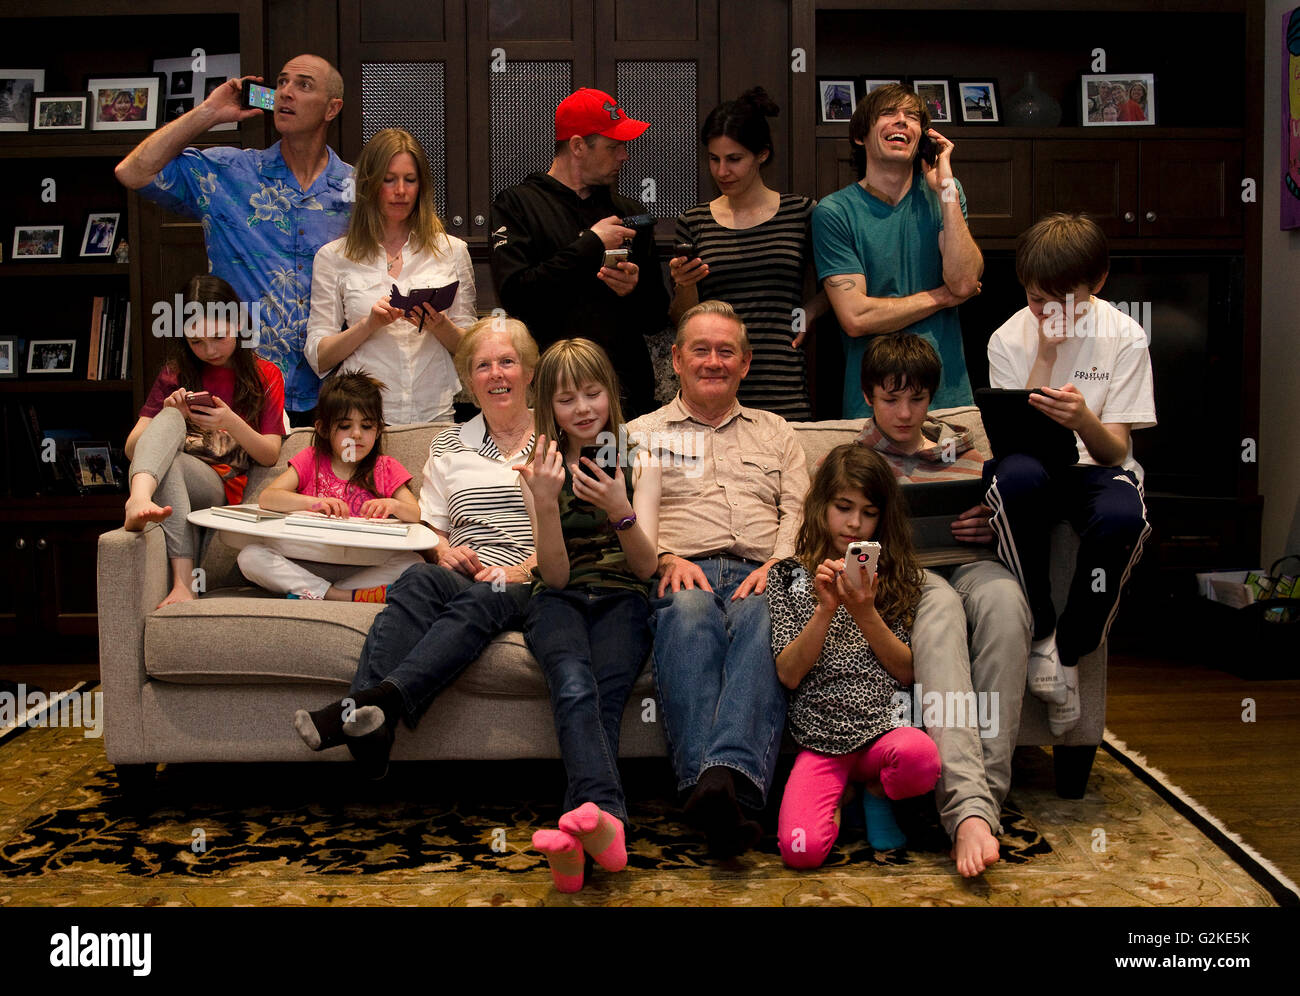 Familienbild aus eine versierte Technologiefamilie, Vancouver, Britisch-Kolumbien, Kanada. MR020, MR022, MR023 MR024, MR025. Stockfoto